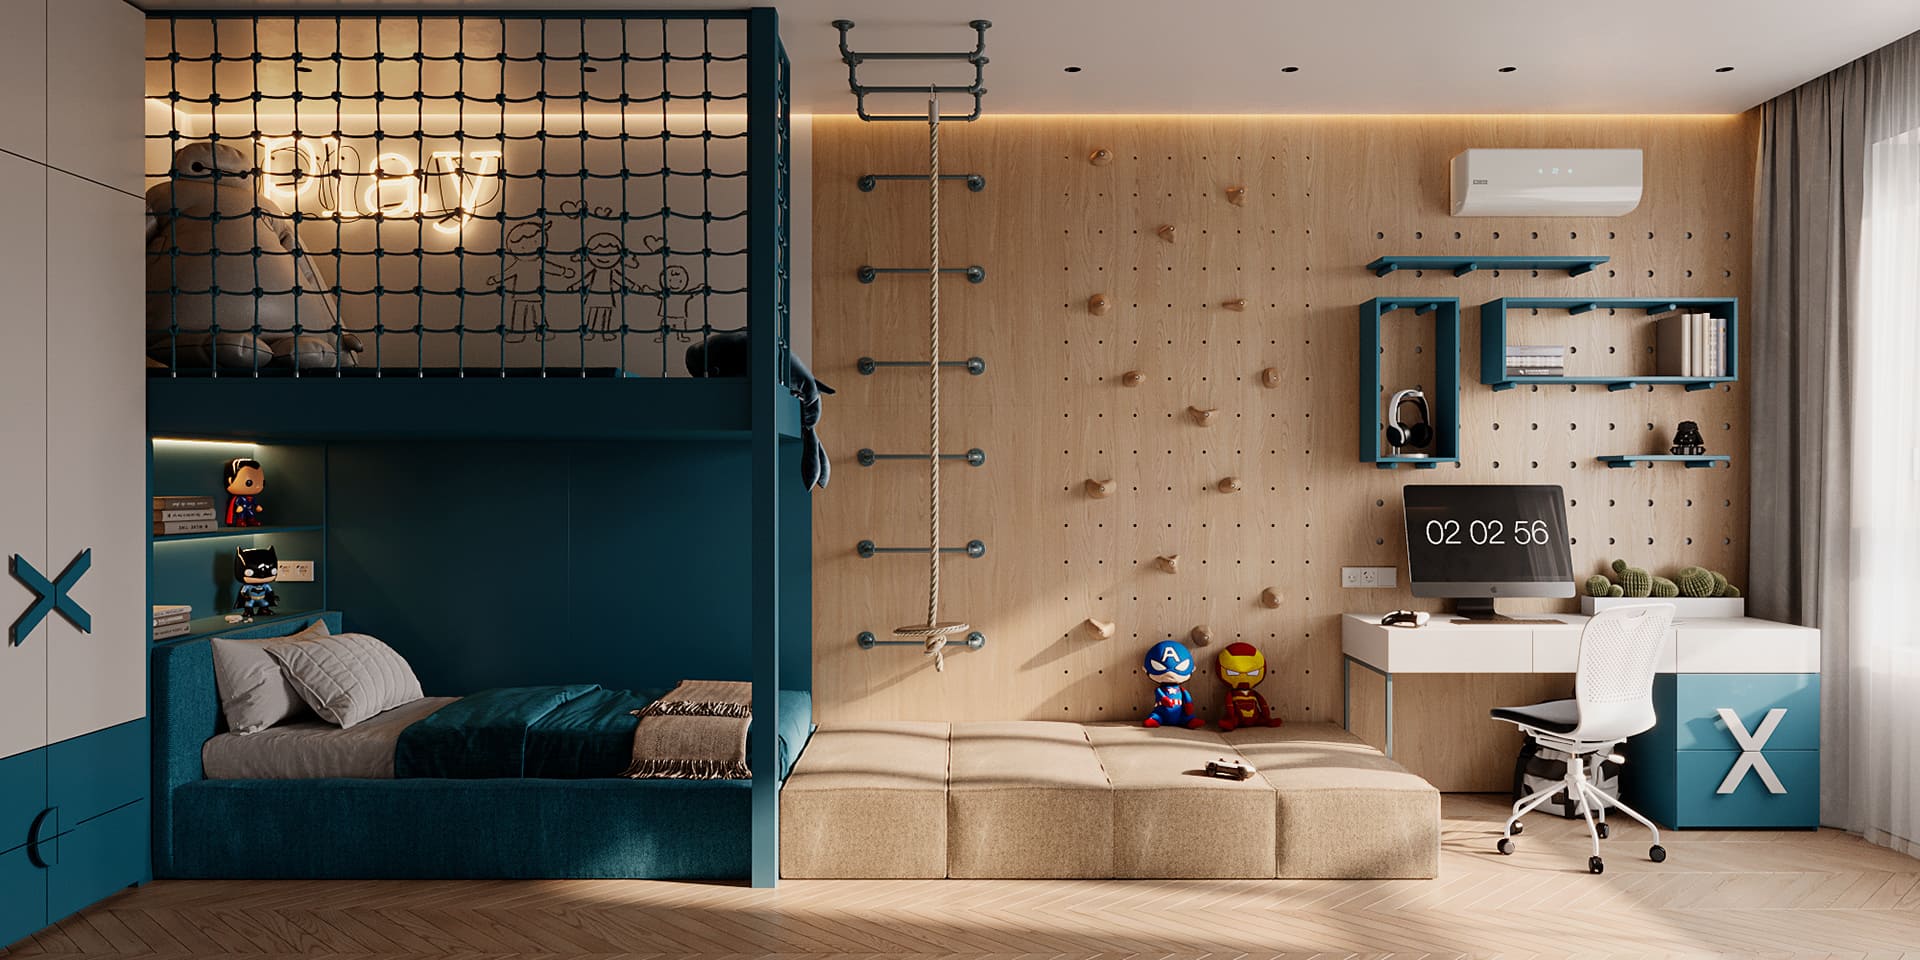 Prestigious bright apartment in minimalist style